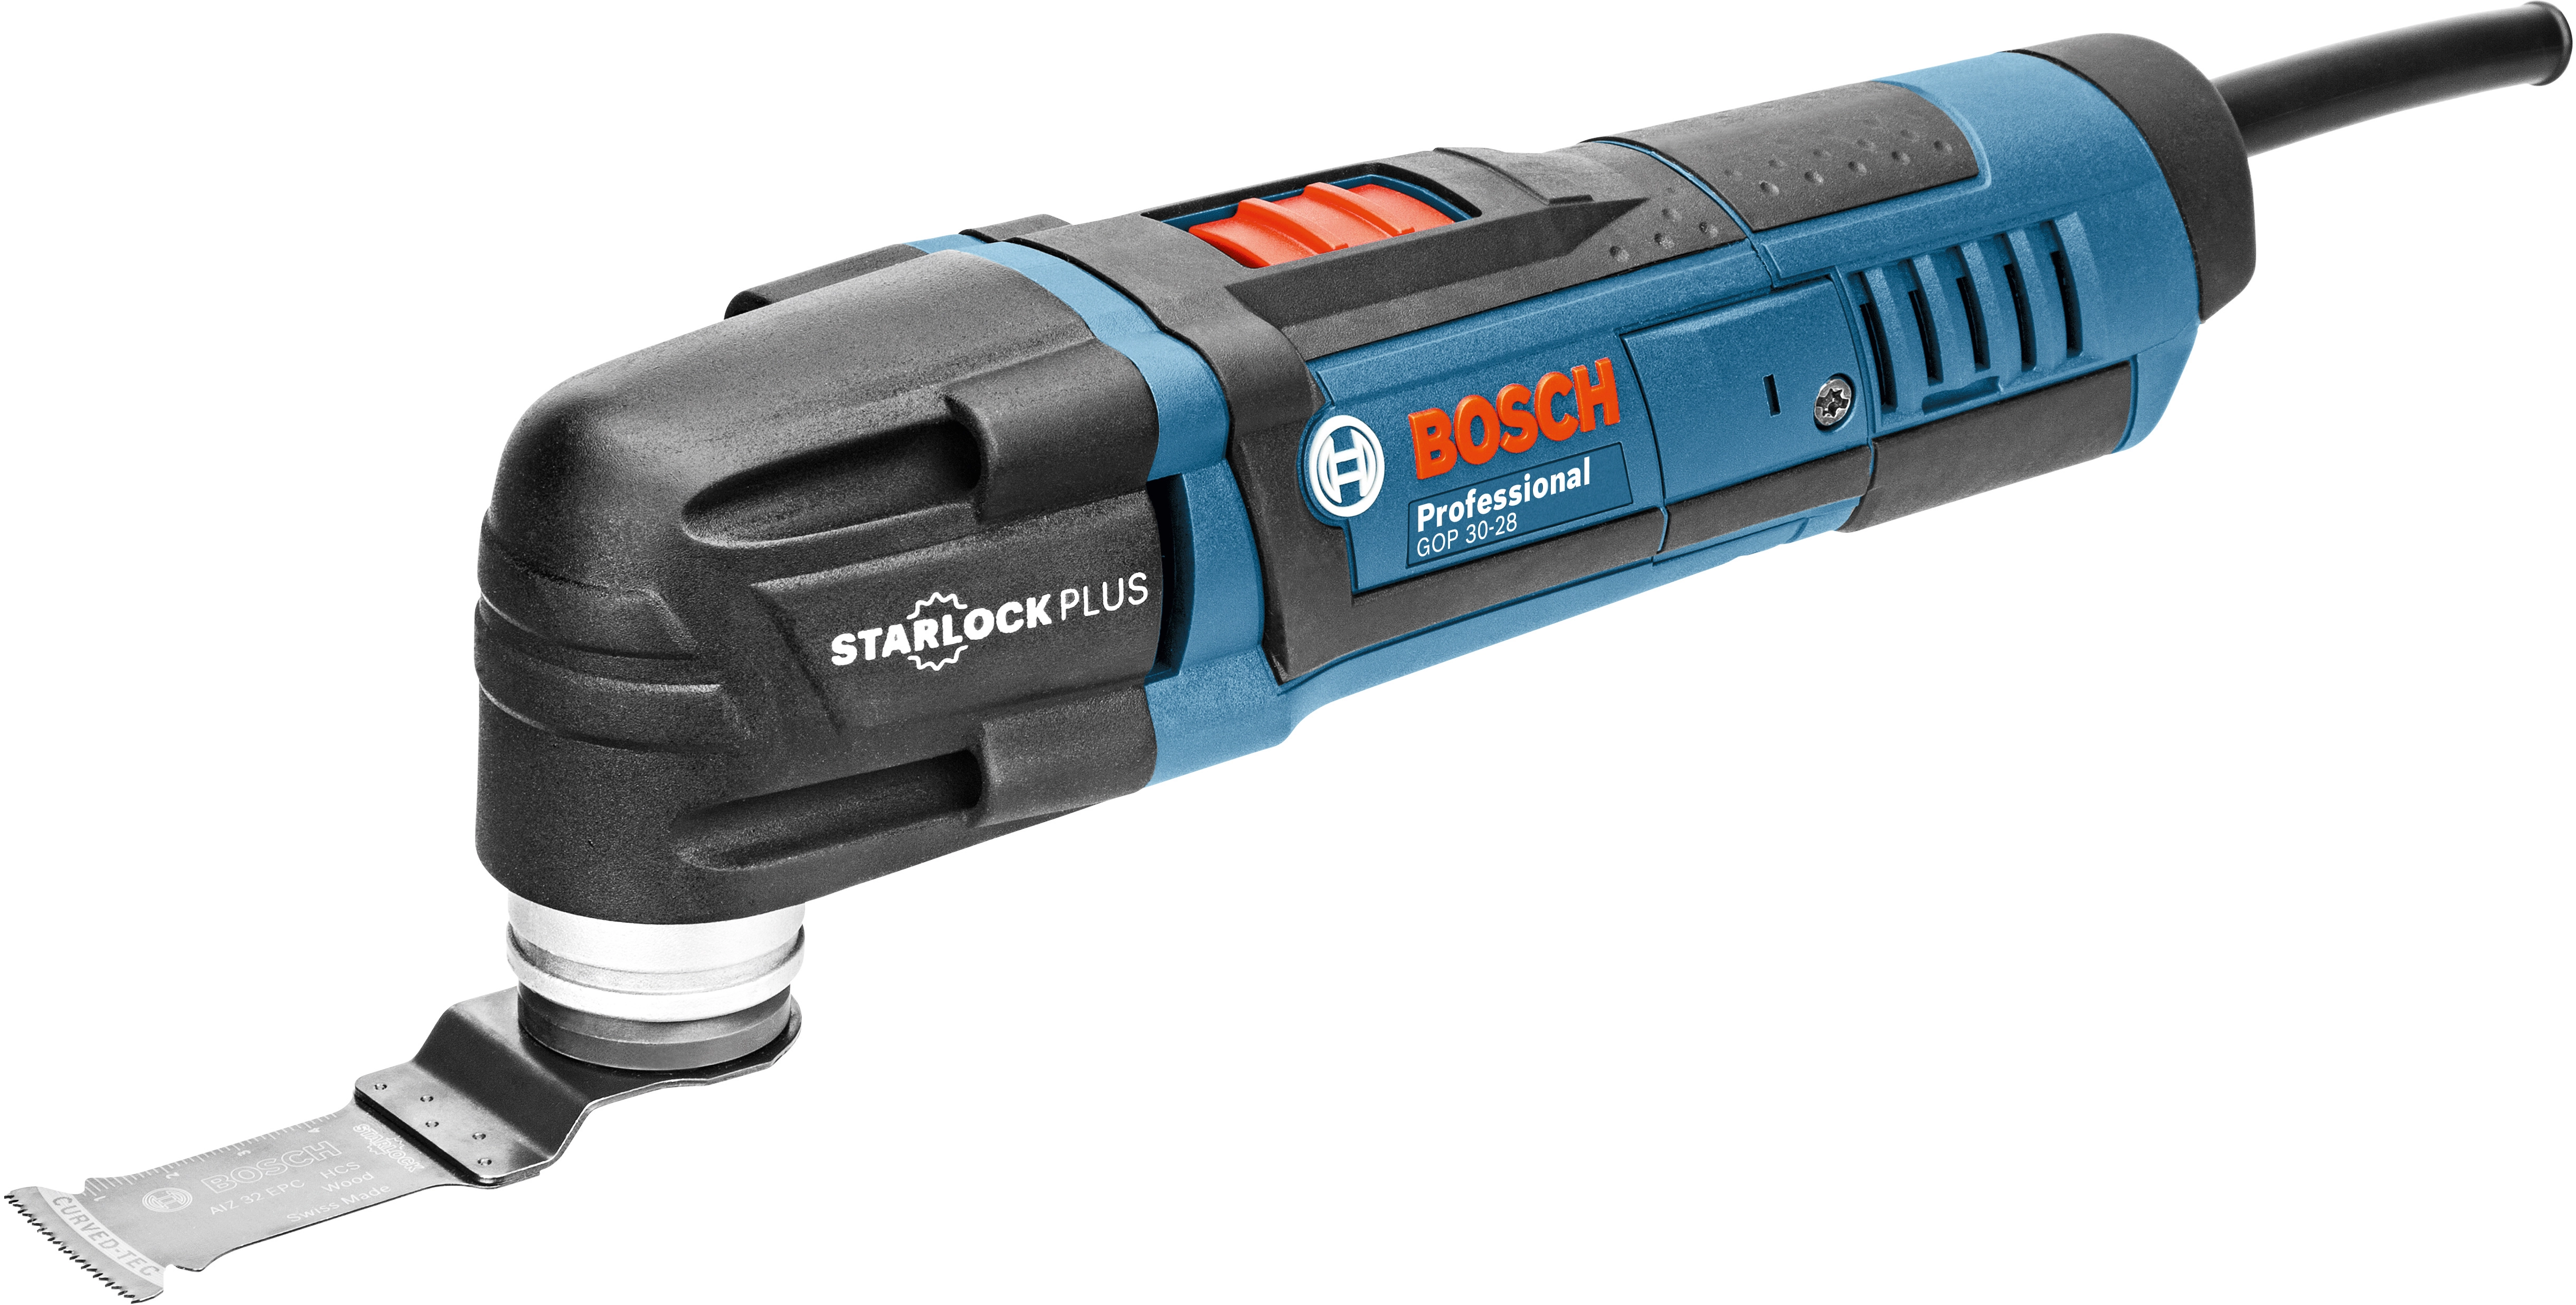 Bosch 300 W Professional 30-28 Multi-Cutter GOP